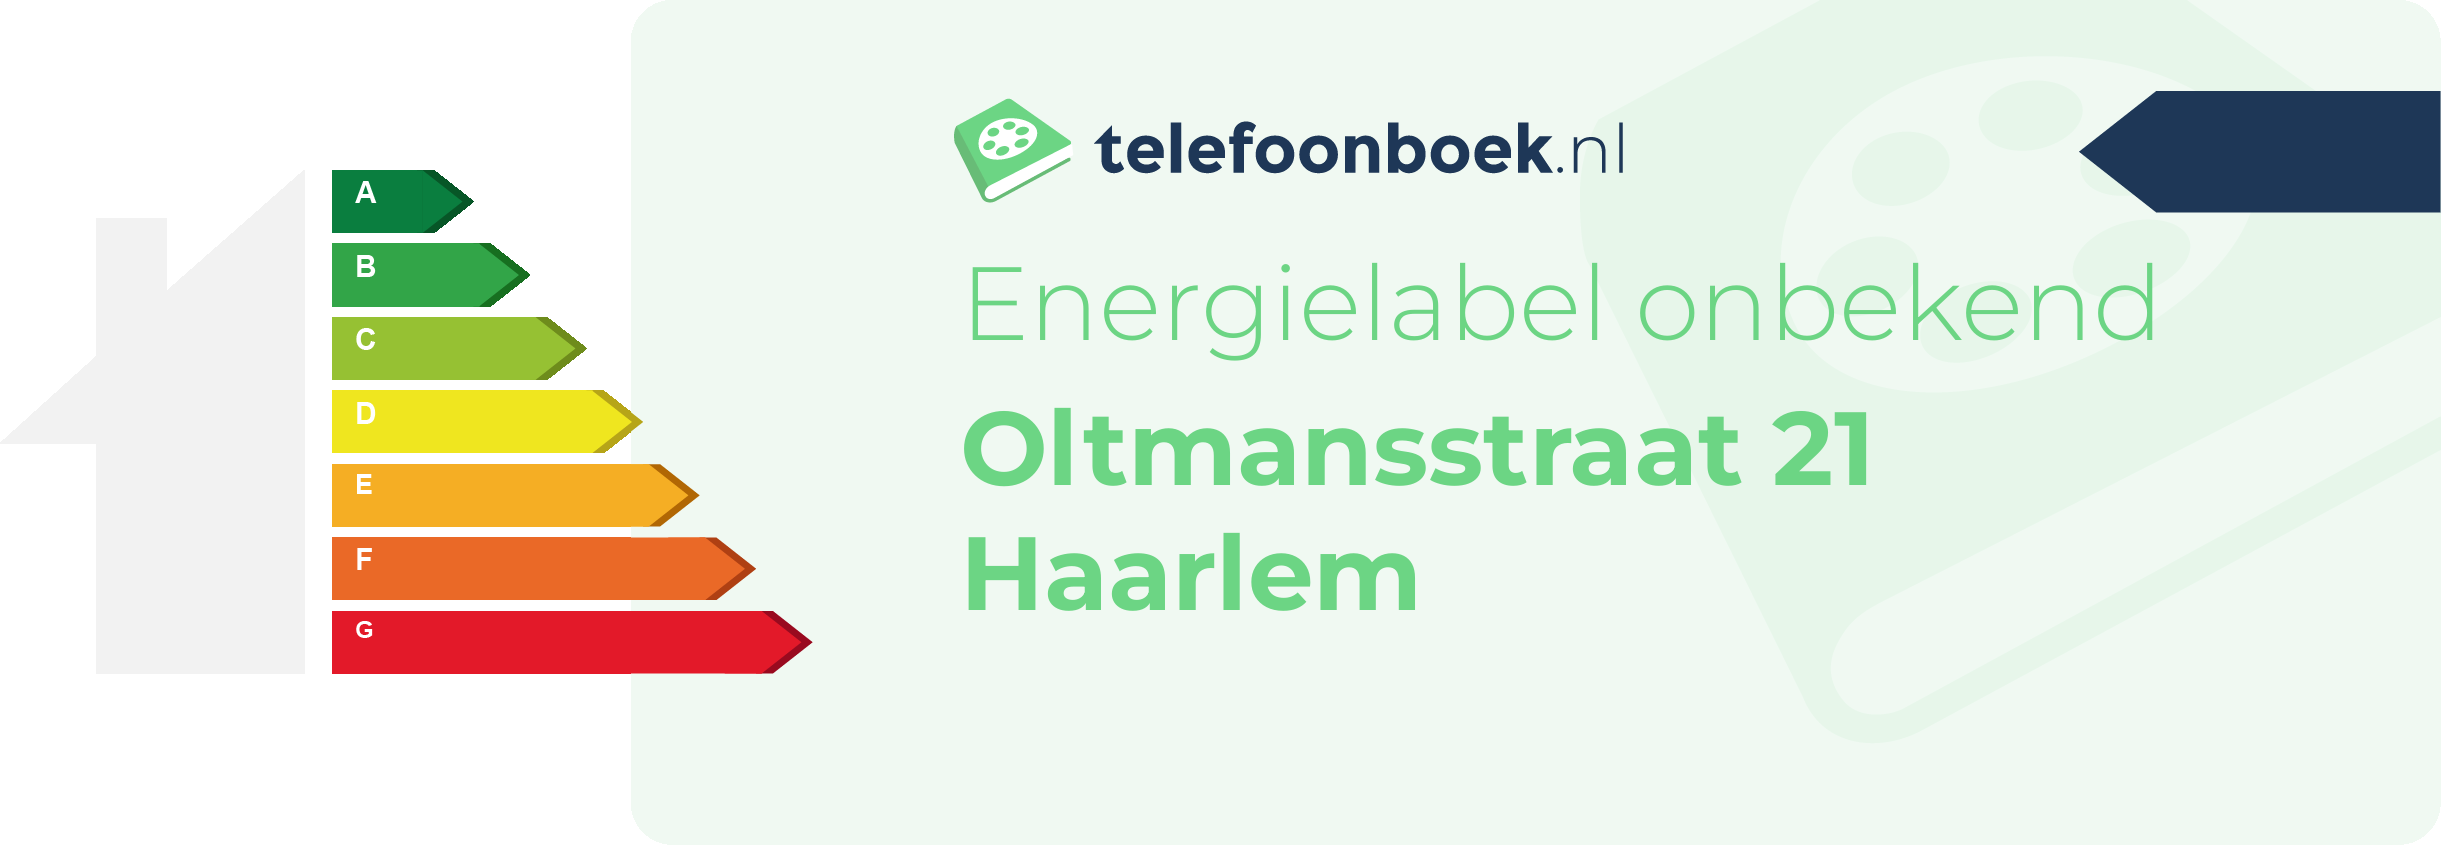 Energielabel Oltmansstraat 21 Haarlem